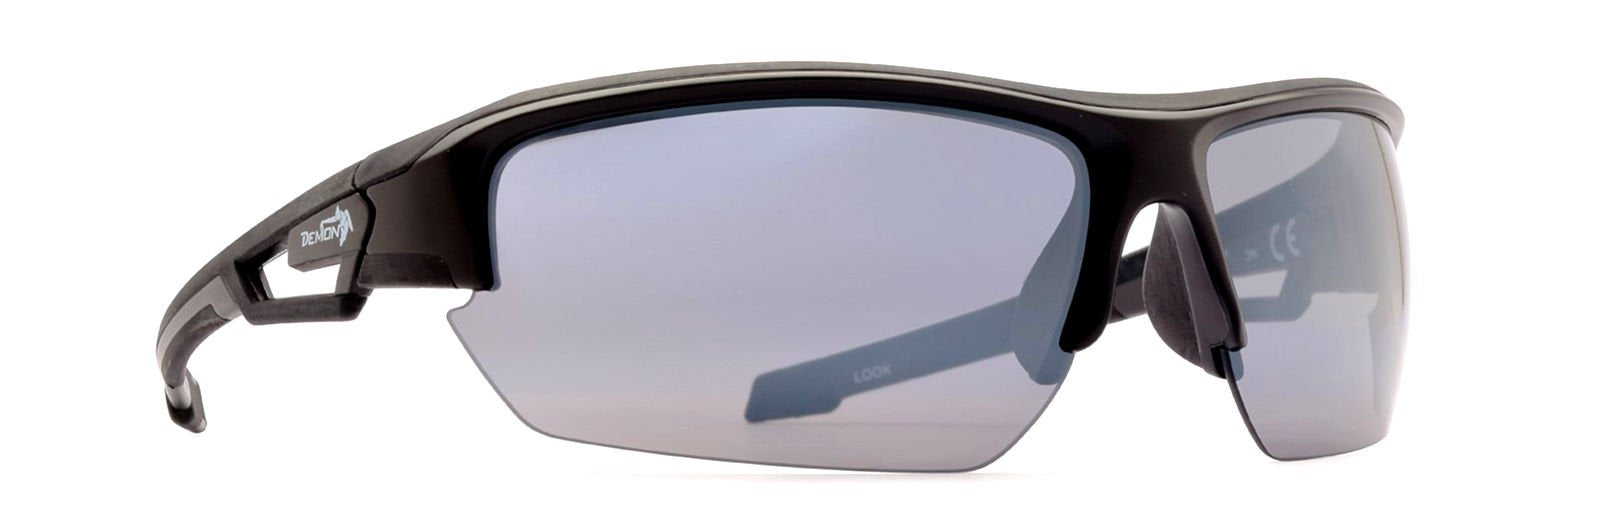 occhiale per ciclismo su strada lenti specchiate nero gommato modello LOOK